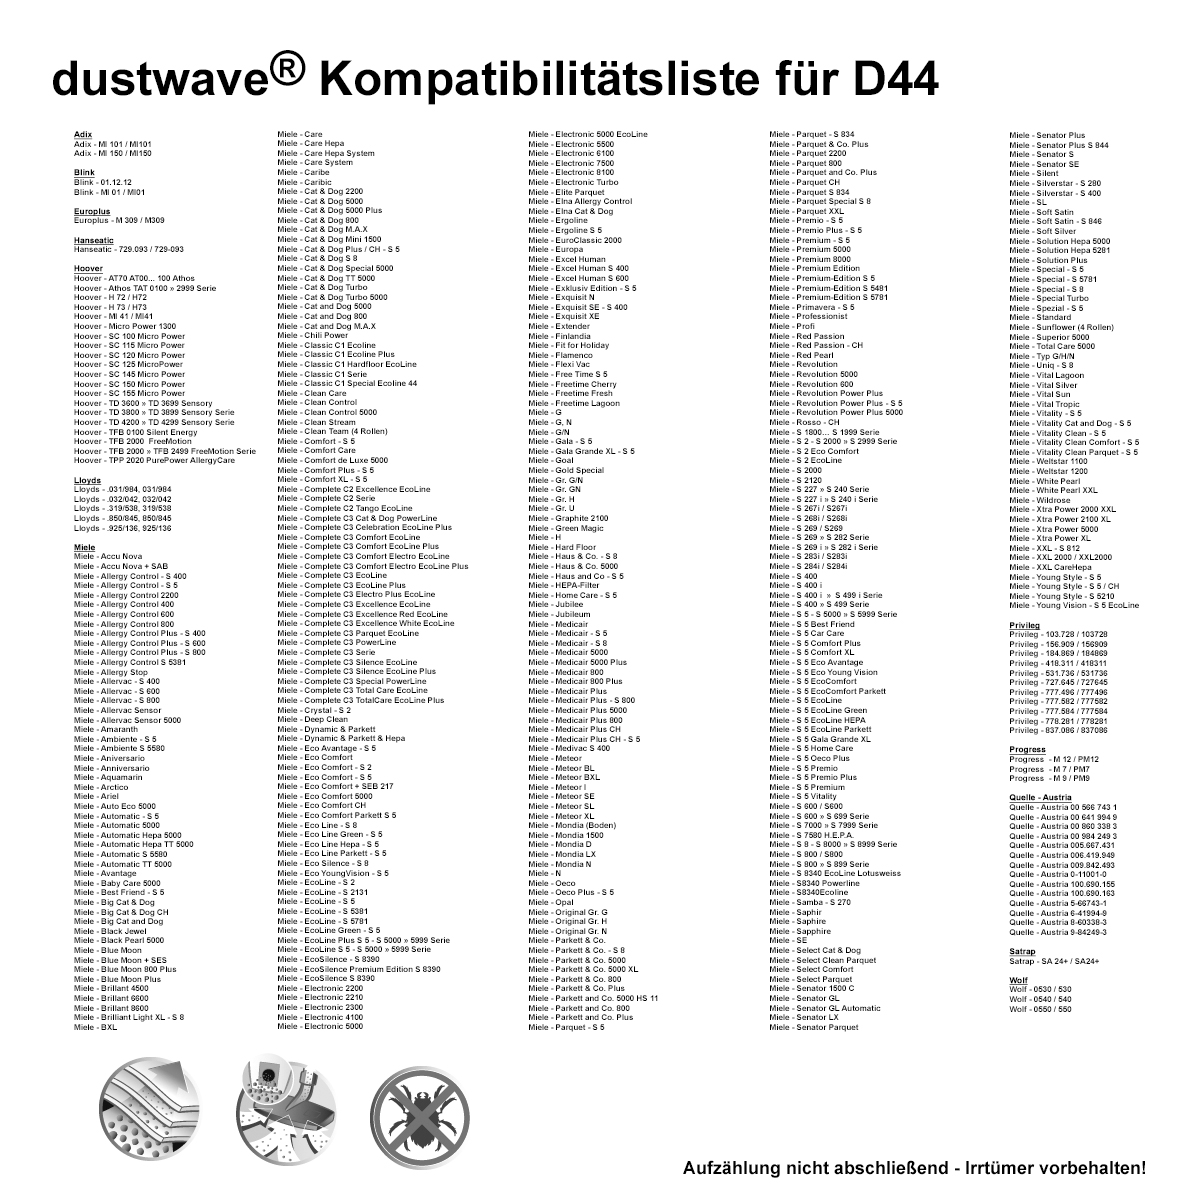 Dustwave® 5 Staubsaugerbeutel für Miele Classic C1 Parquet EcoLine - hocheffizient, mehrlagiges Mikrovlies mit Hygieneverschluss - Made in Germany